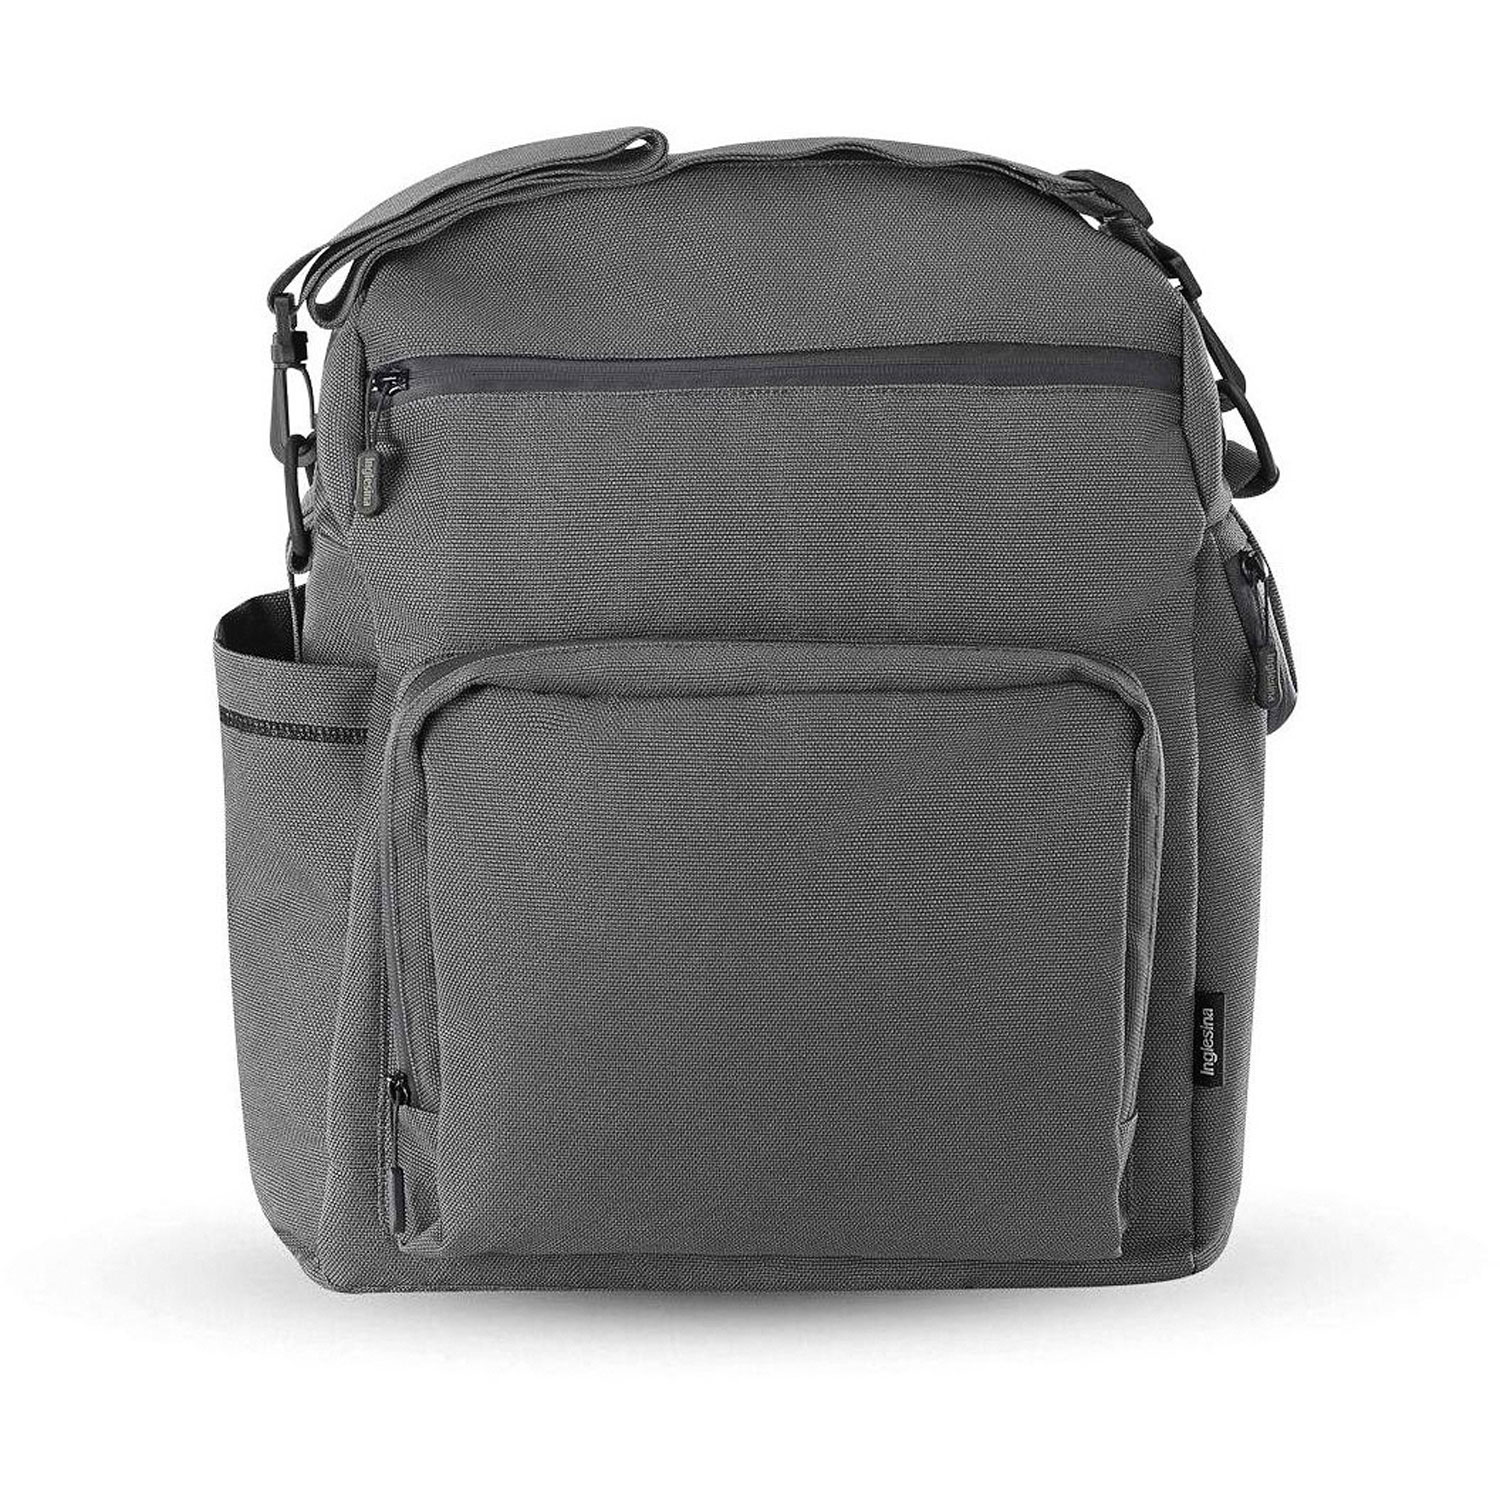 Сумка-рюкзак для коляски ADVENTURE BAG, цвет CHARCOAL GREY (2021) Inglesina mutsy сумка для коляски nio adventure